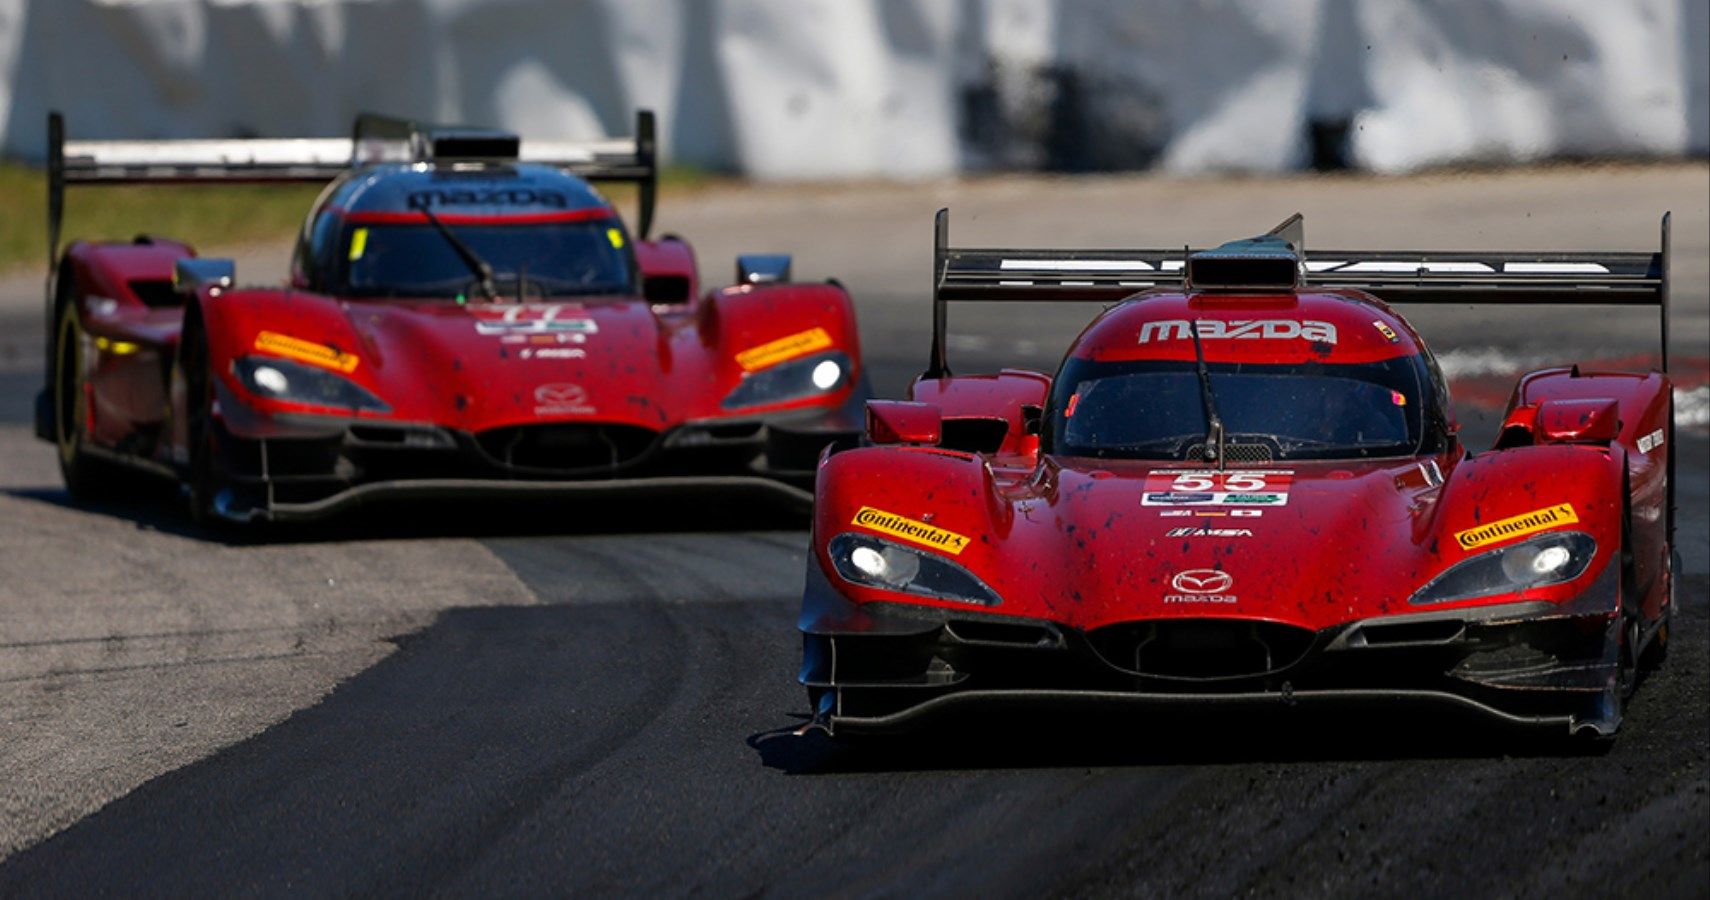 Mazda DPi race cars